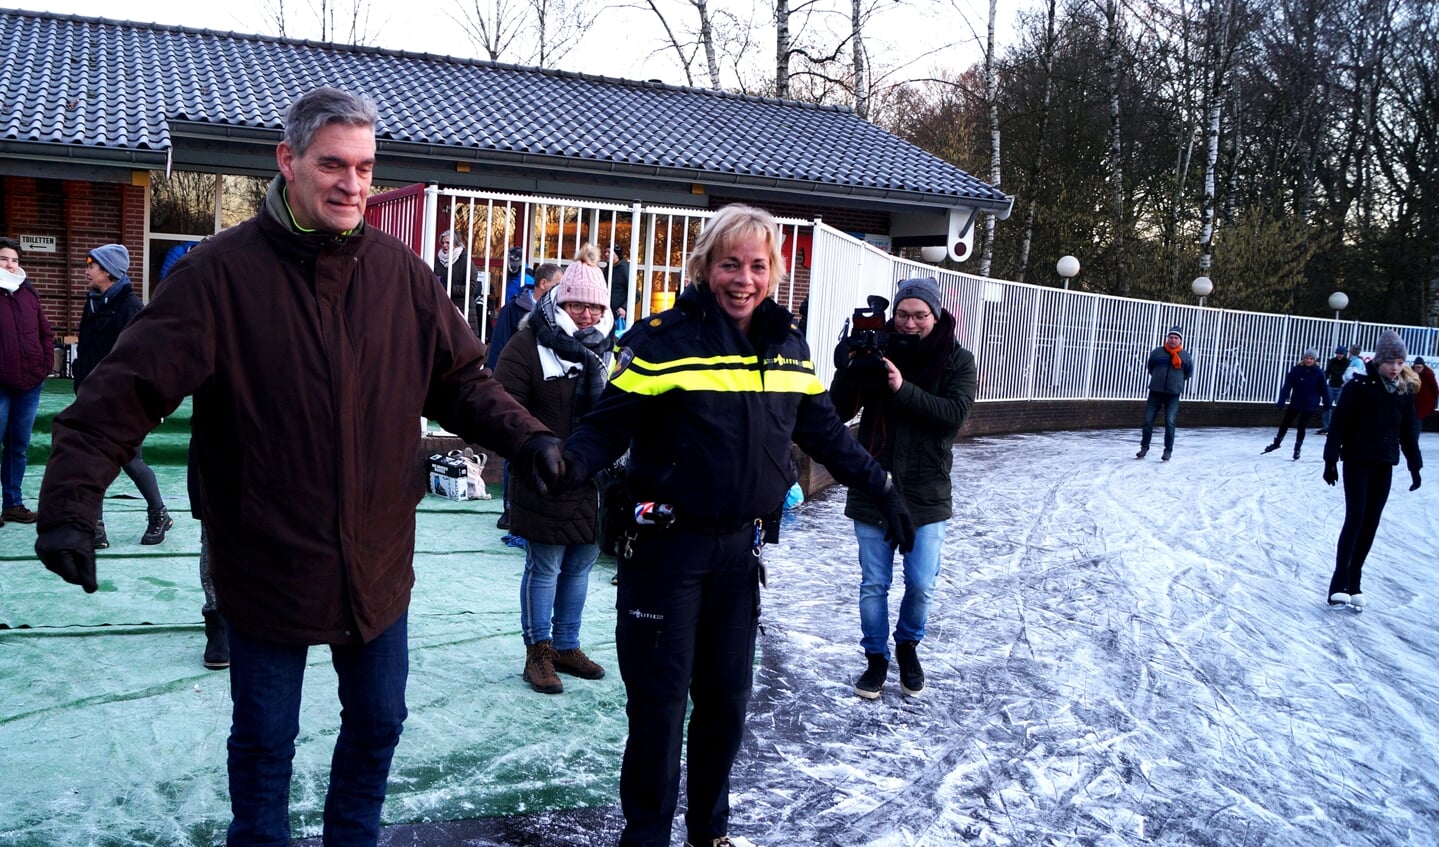 De Doornse wijkagent Tineke Bikker durfde op aandringen de burgemeester Frits Naafs het ijs te betreden